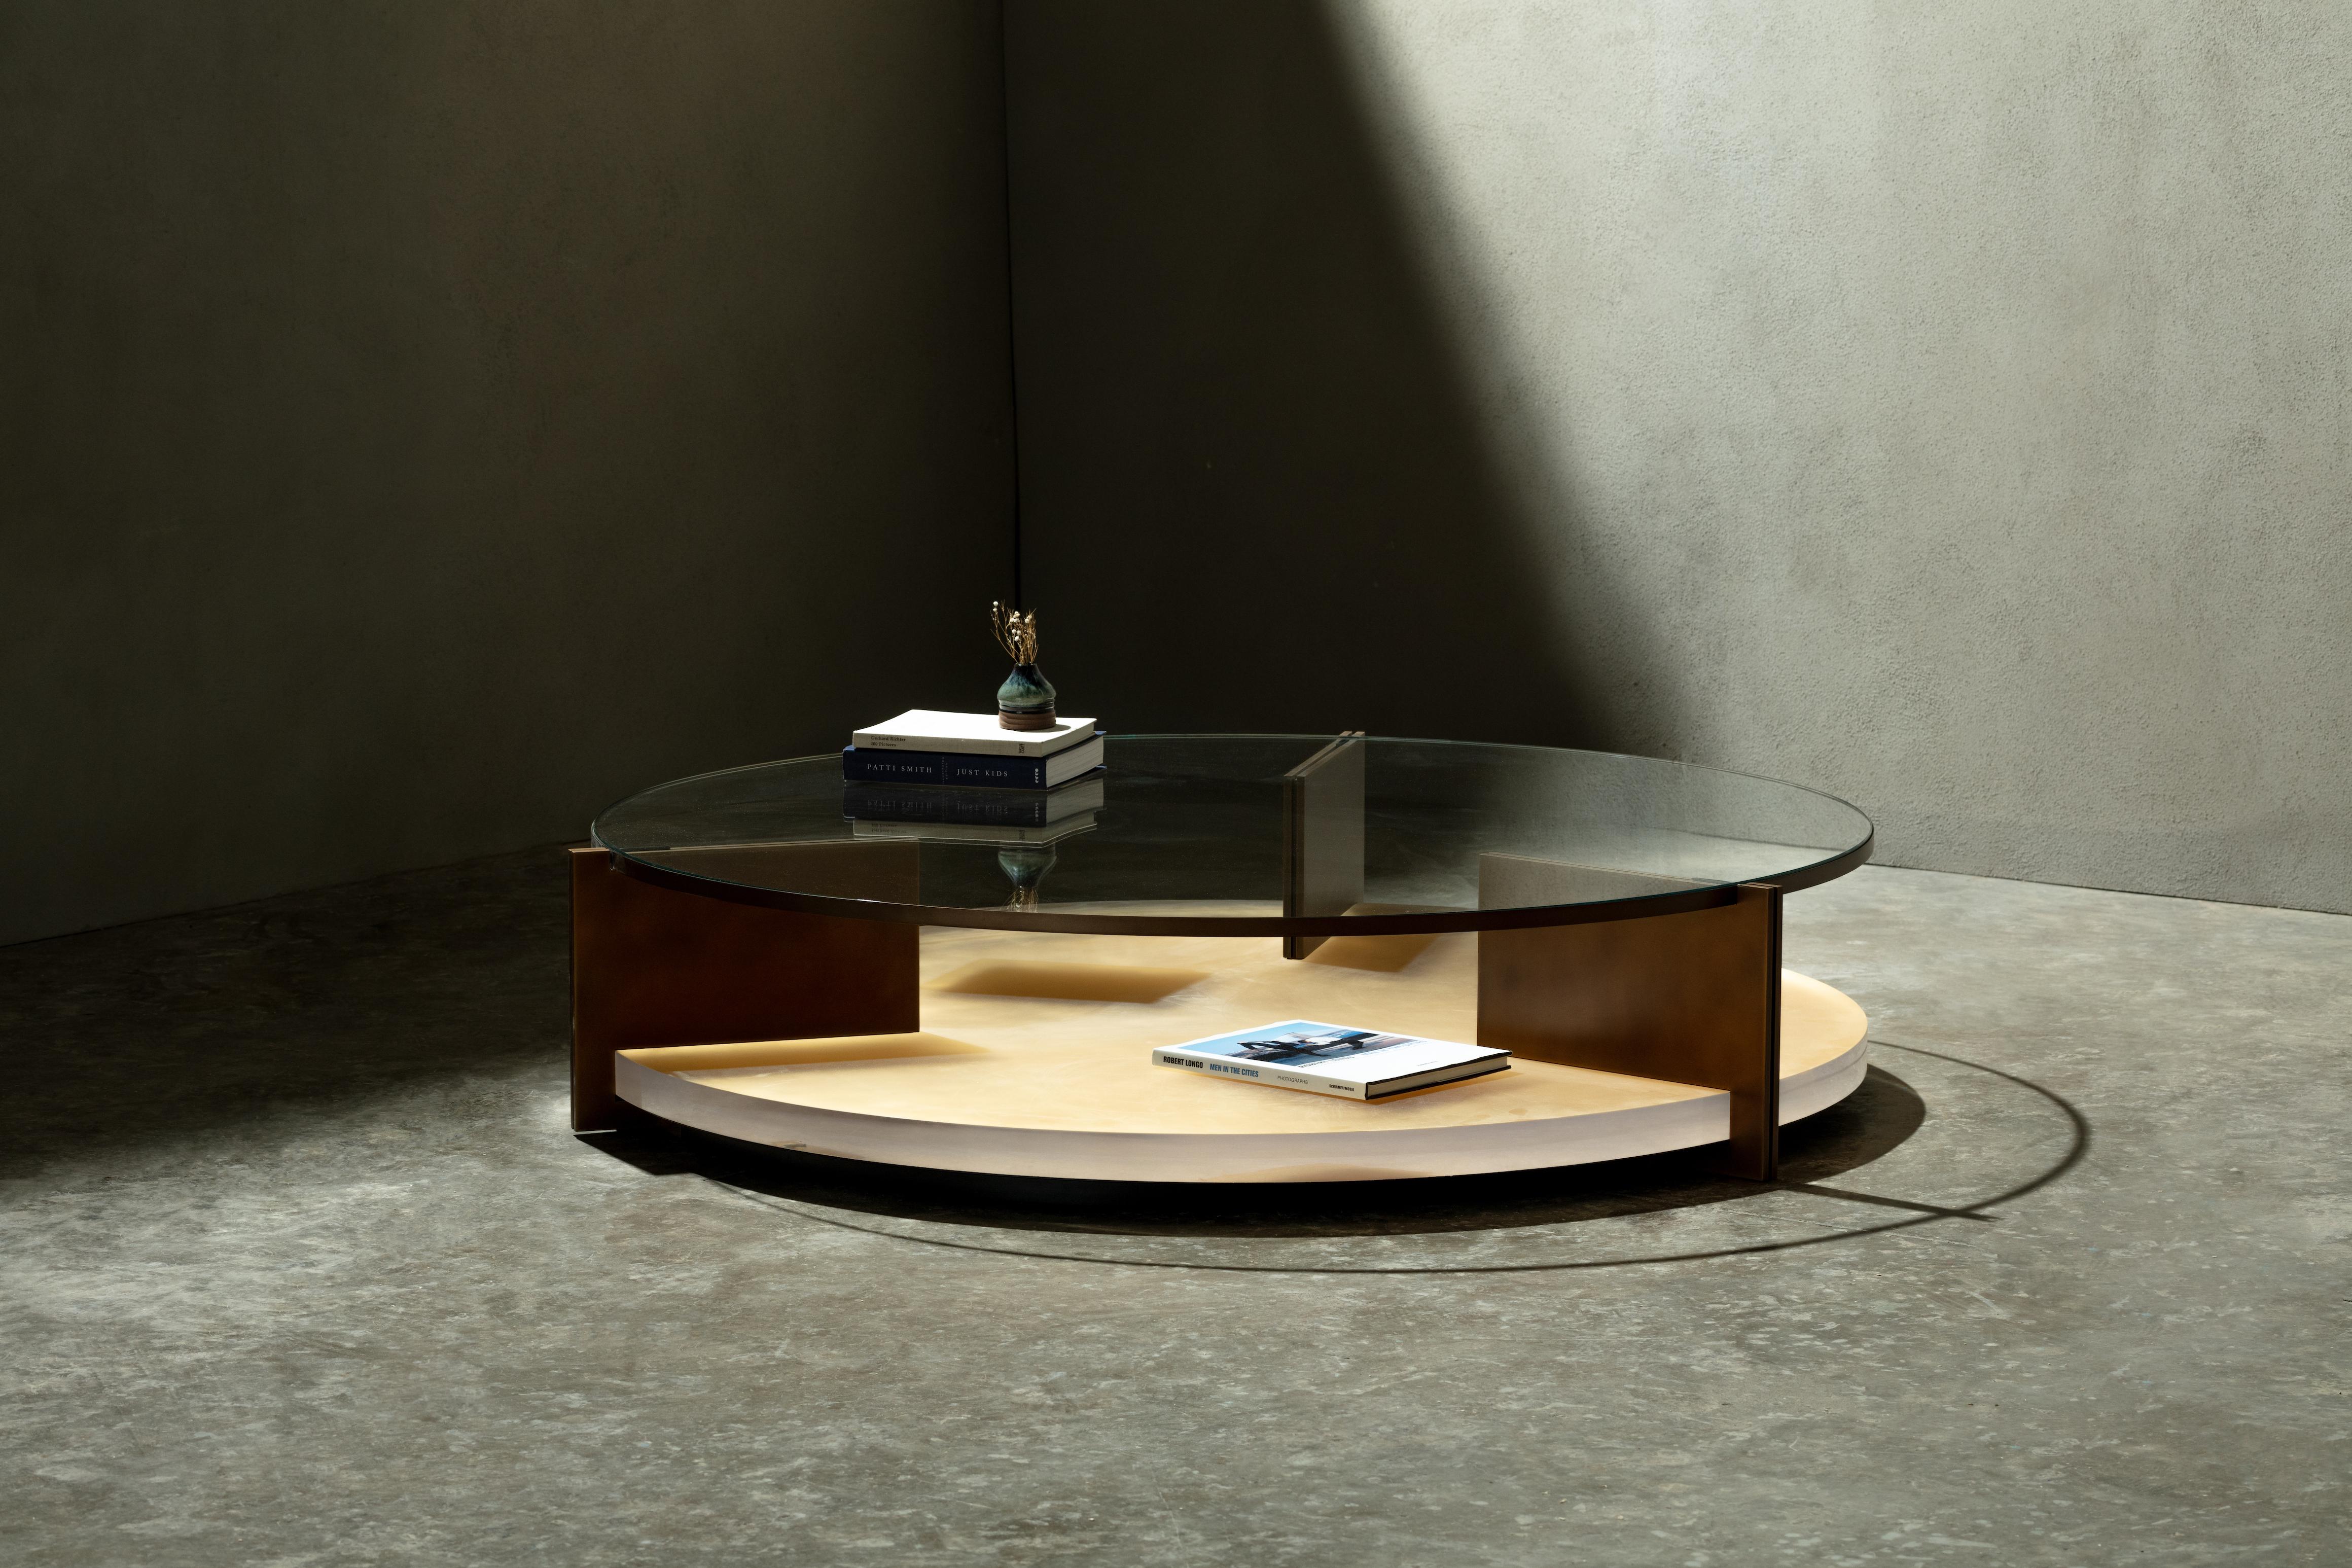 Inspirée de la table d'appoint Umbra, la table basse Clio est dotée d'un plateau en verre extra clair reposant sur une base en acrylique sablé avec un fond en feuille d'argent ou d'or et soutenue par trois pieds en métal. L'épaisseur de l'acrylique